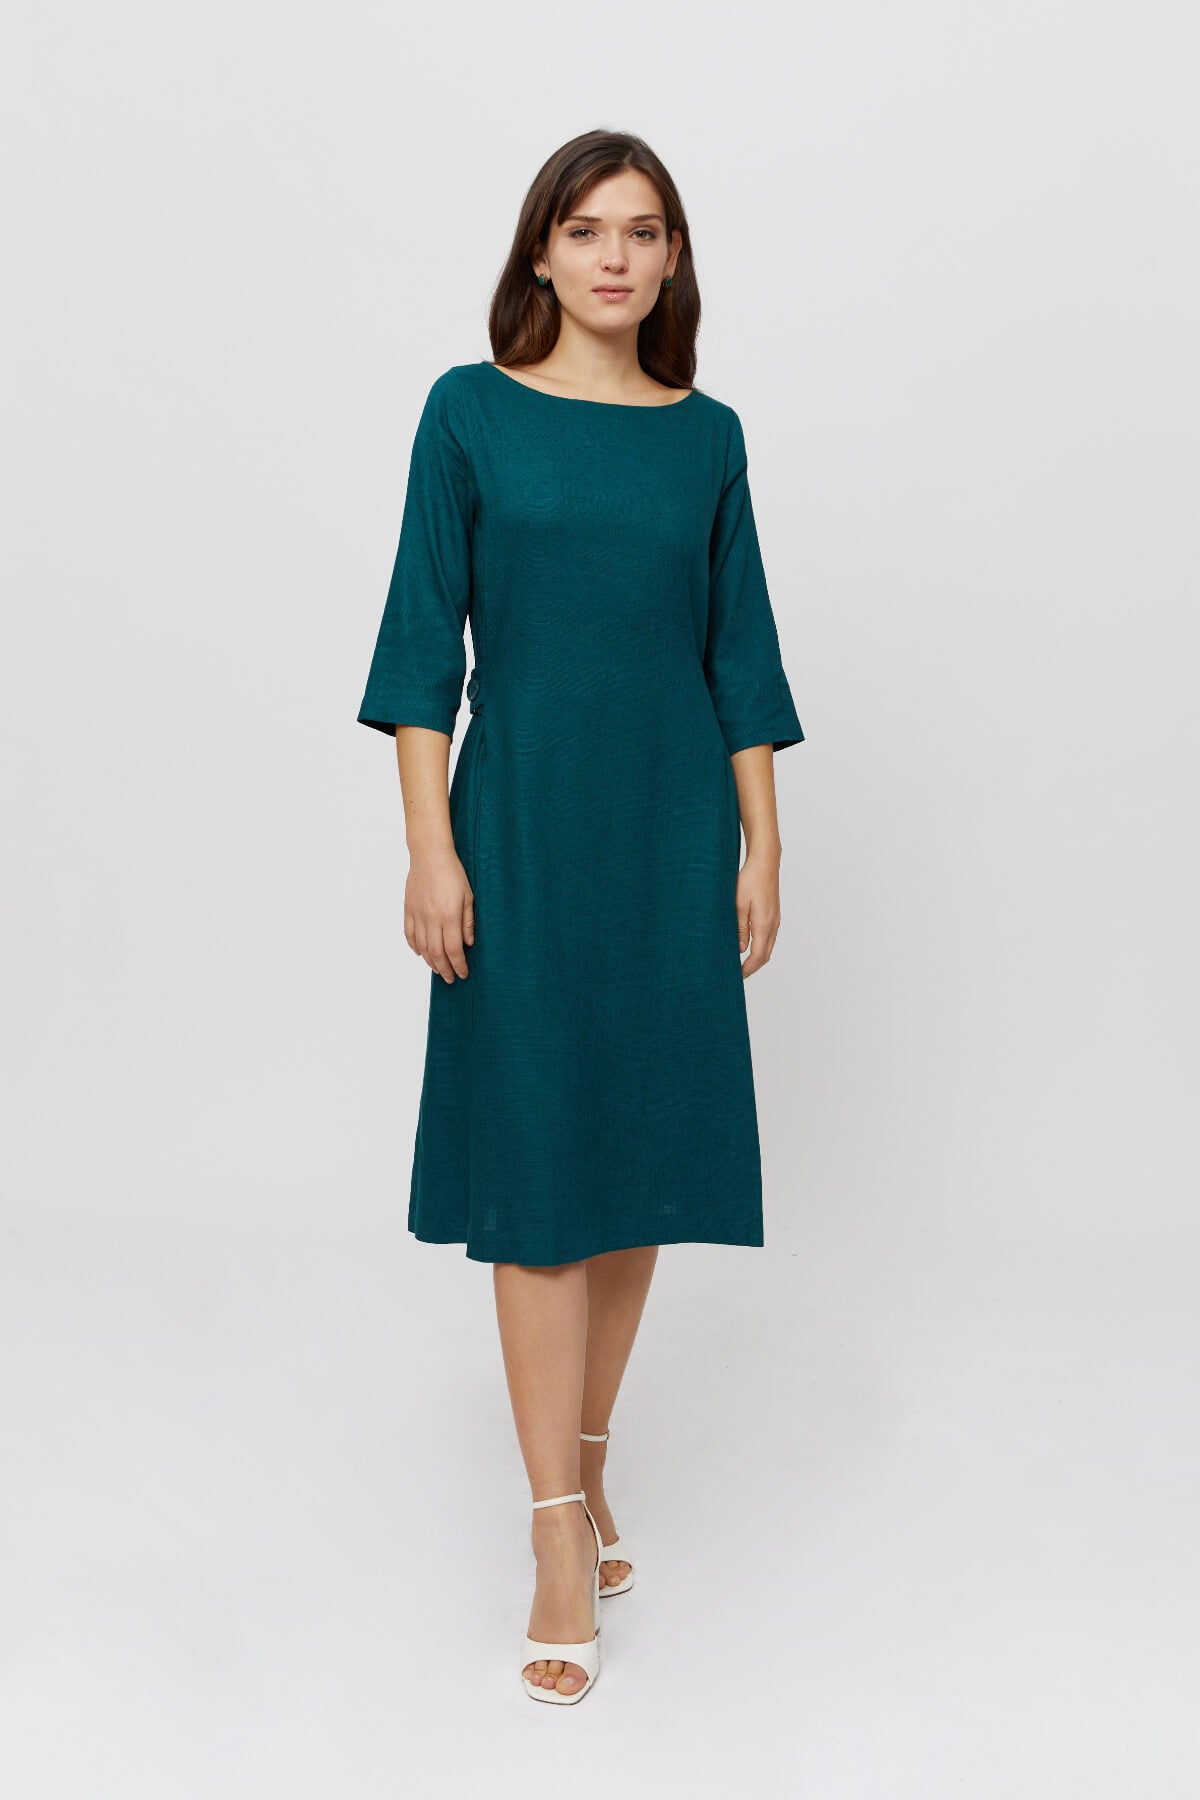 Grünes A Linie Kleid EMILIA · Maxi Kleid Langarm · Festliches und Elegantes Kleid mit Taschen -AYANI